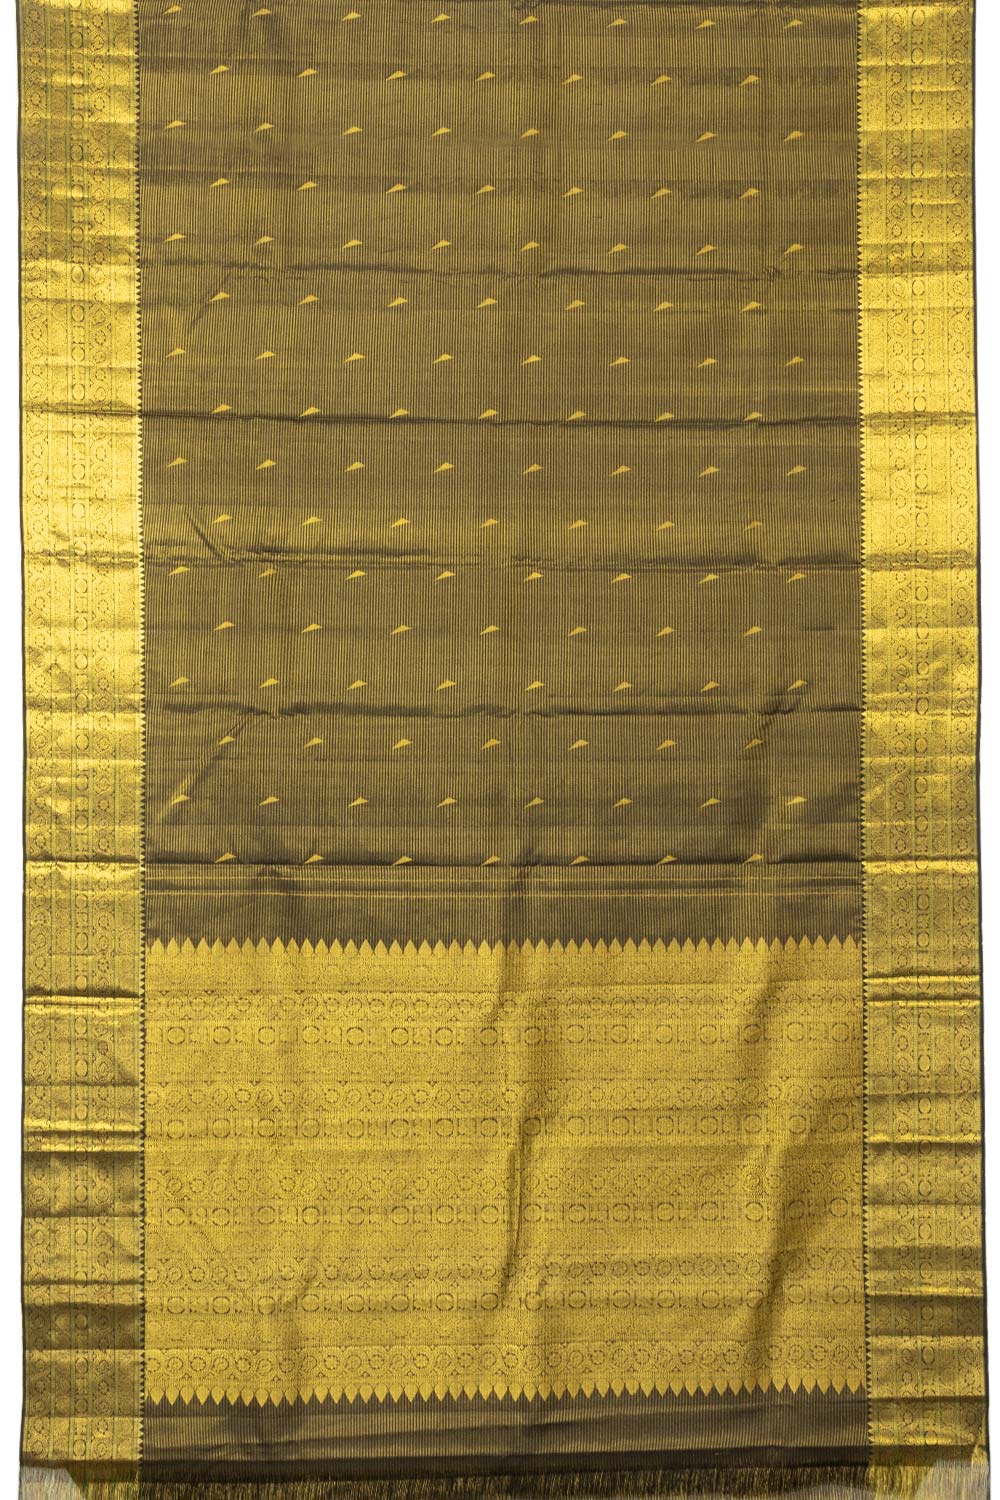 Black with Gold Bridal Kanjivaram Silk Saree - Avishya